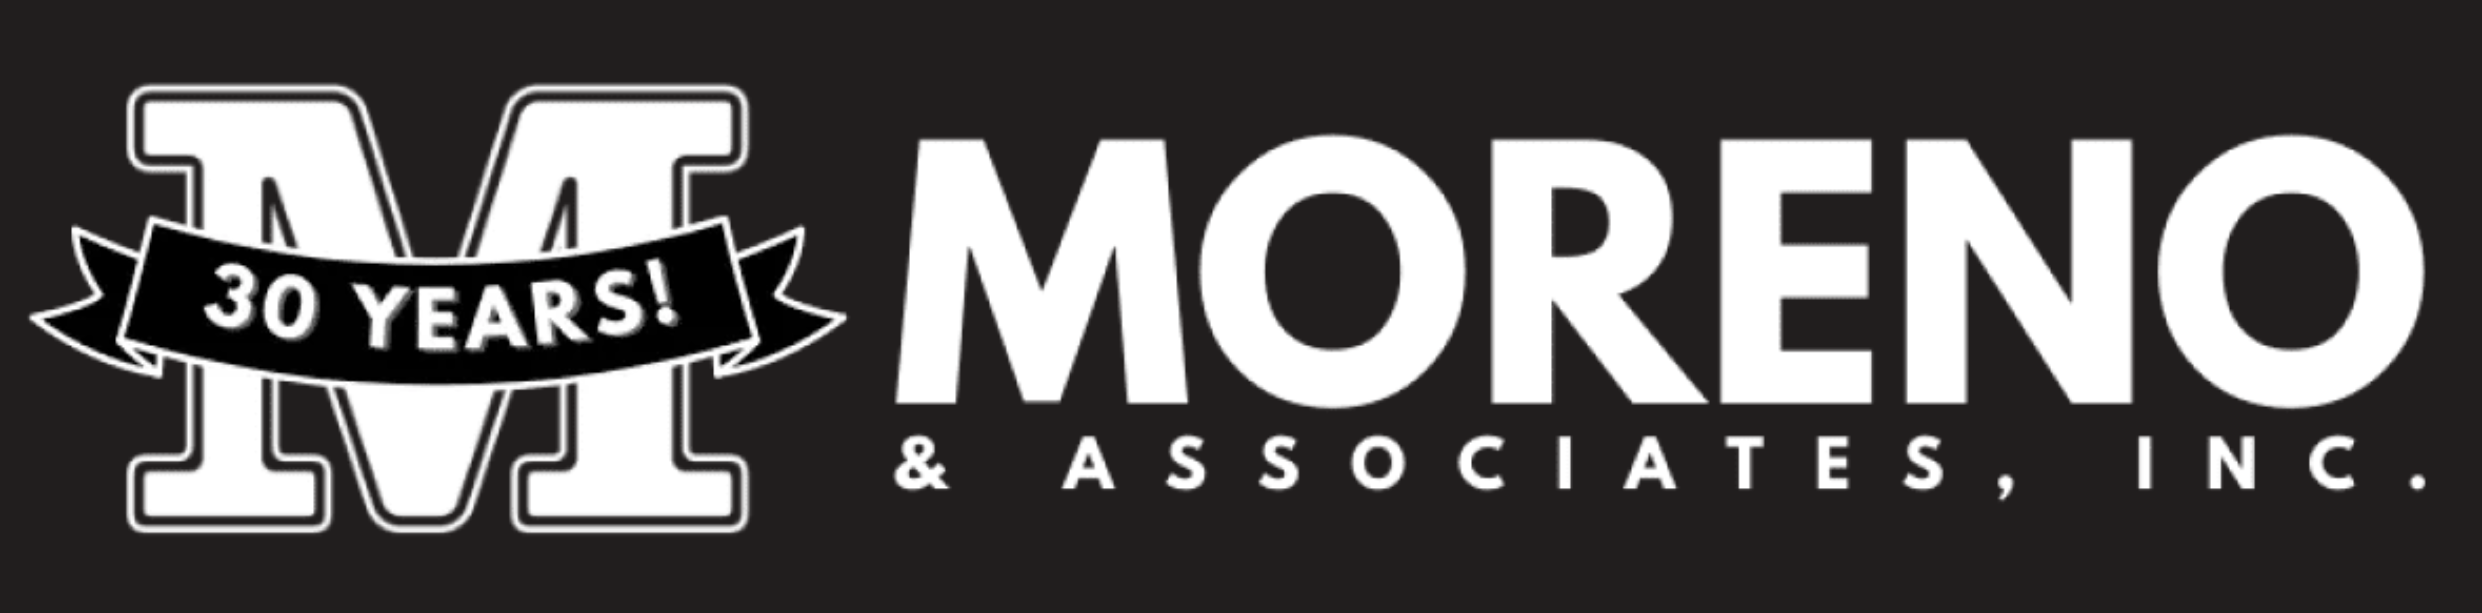 Moreno & Associates Inc.